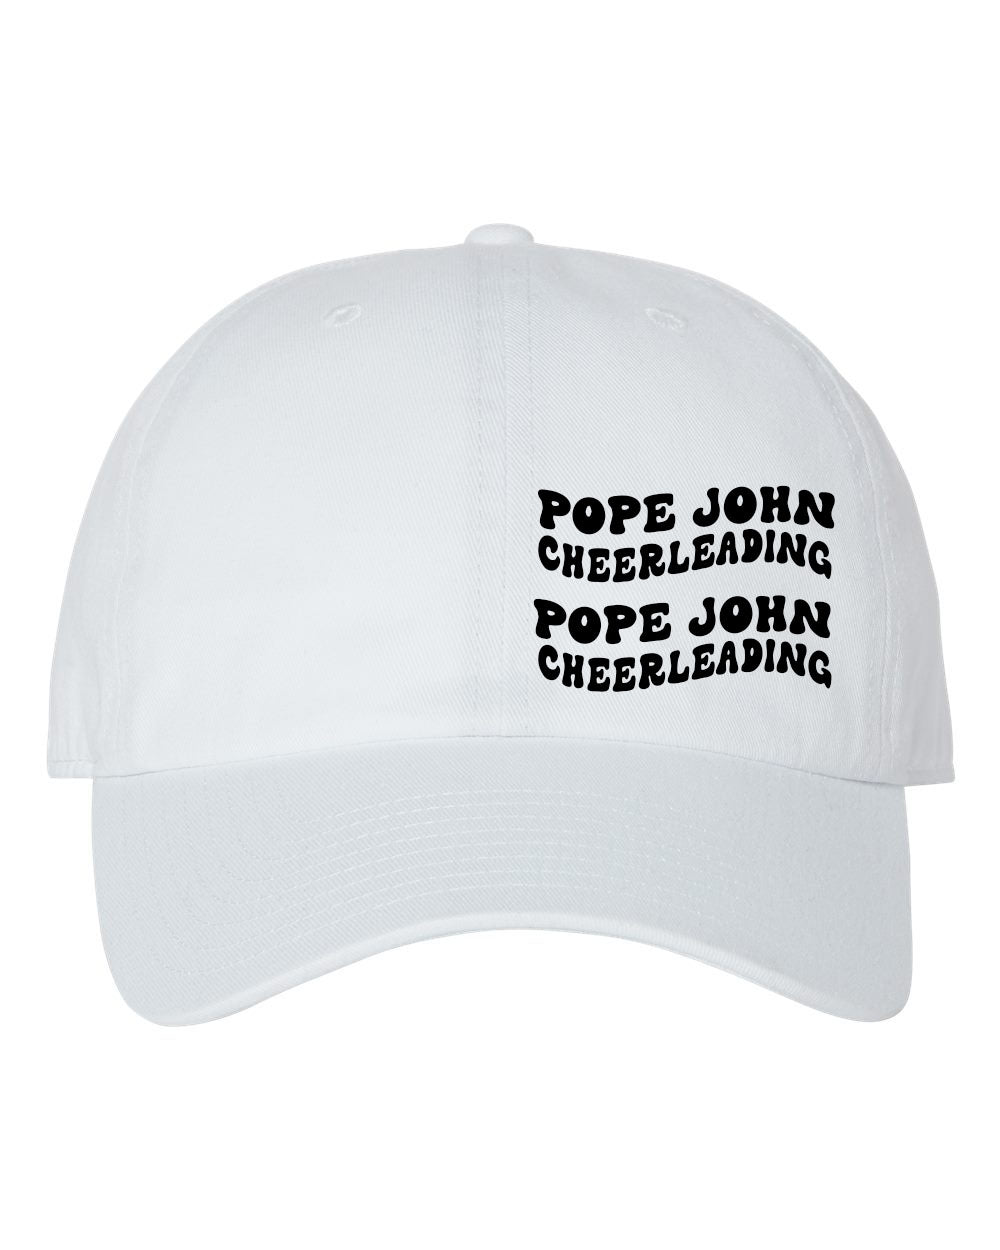 Pope John Cheer design 6 Trucker Hat